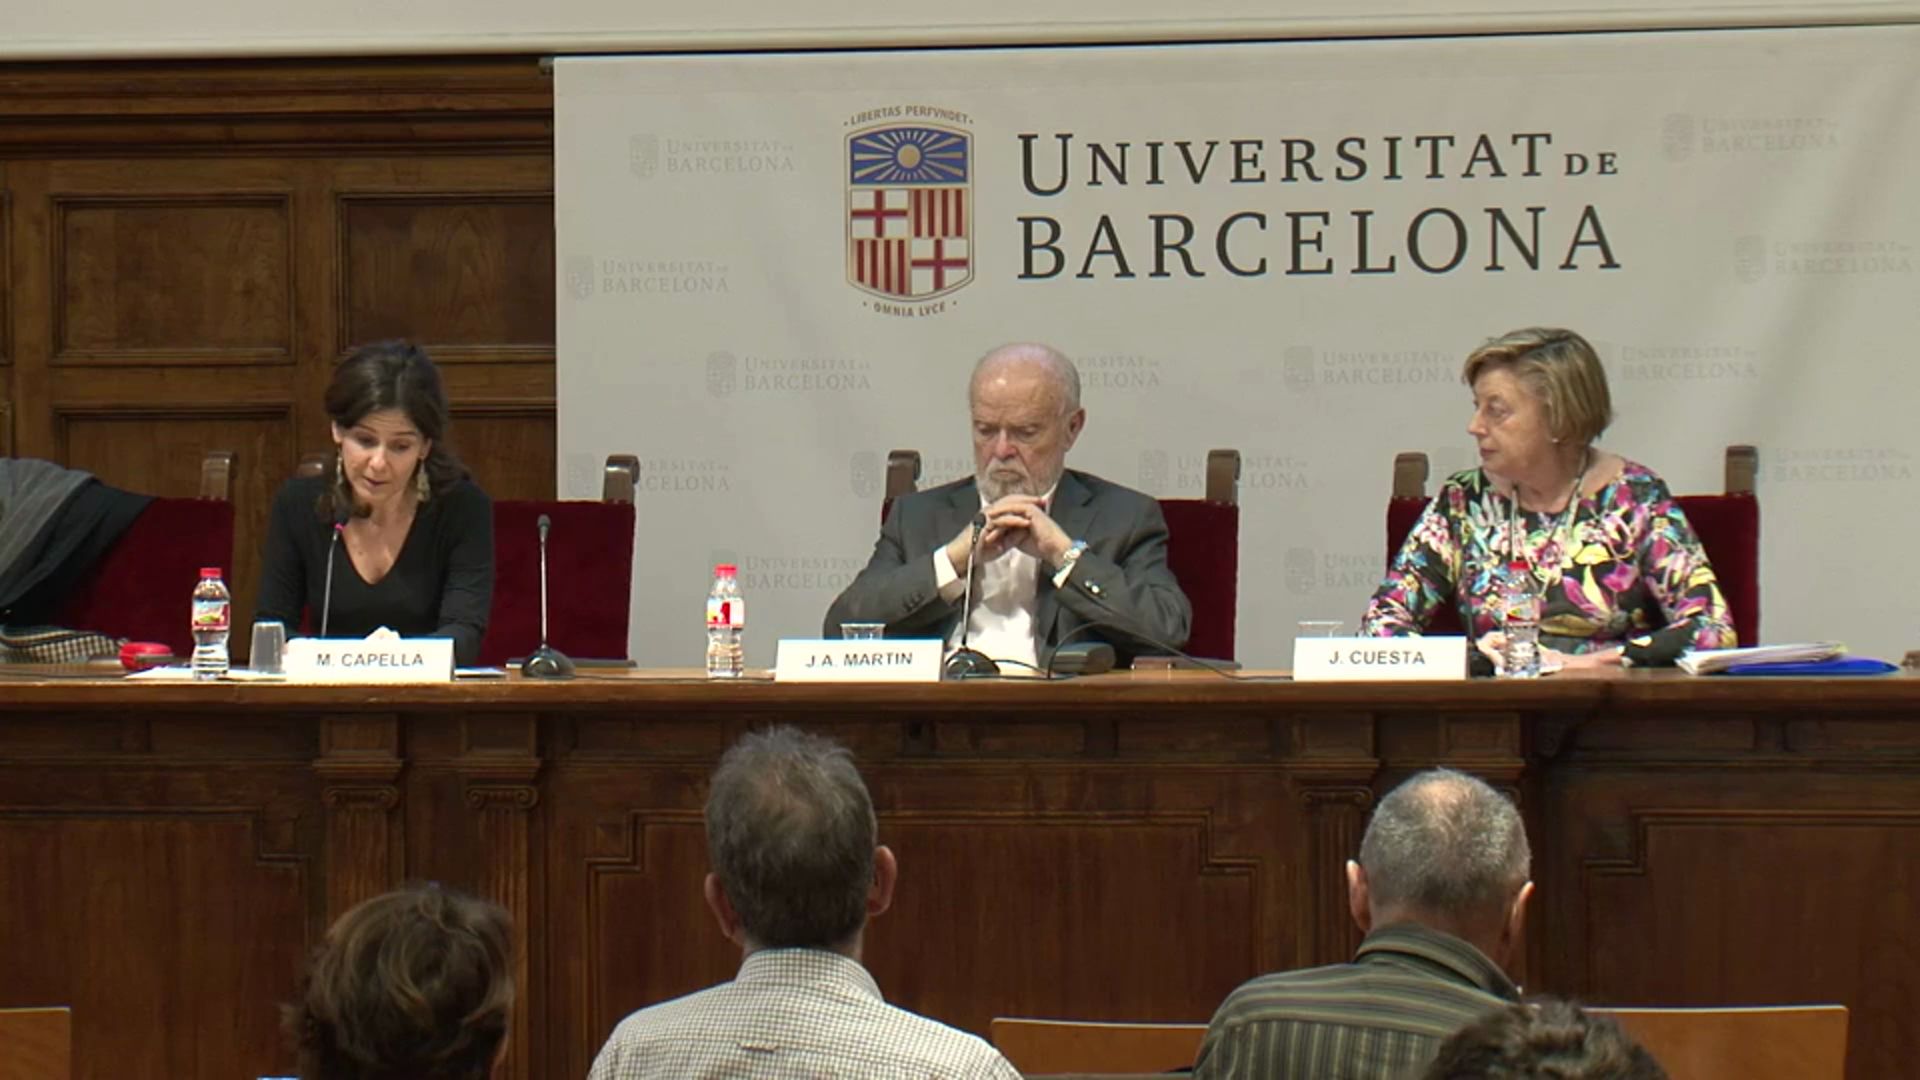 4ª Sesión: Leyes, políticas y pasado en España y Cataluña (I)